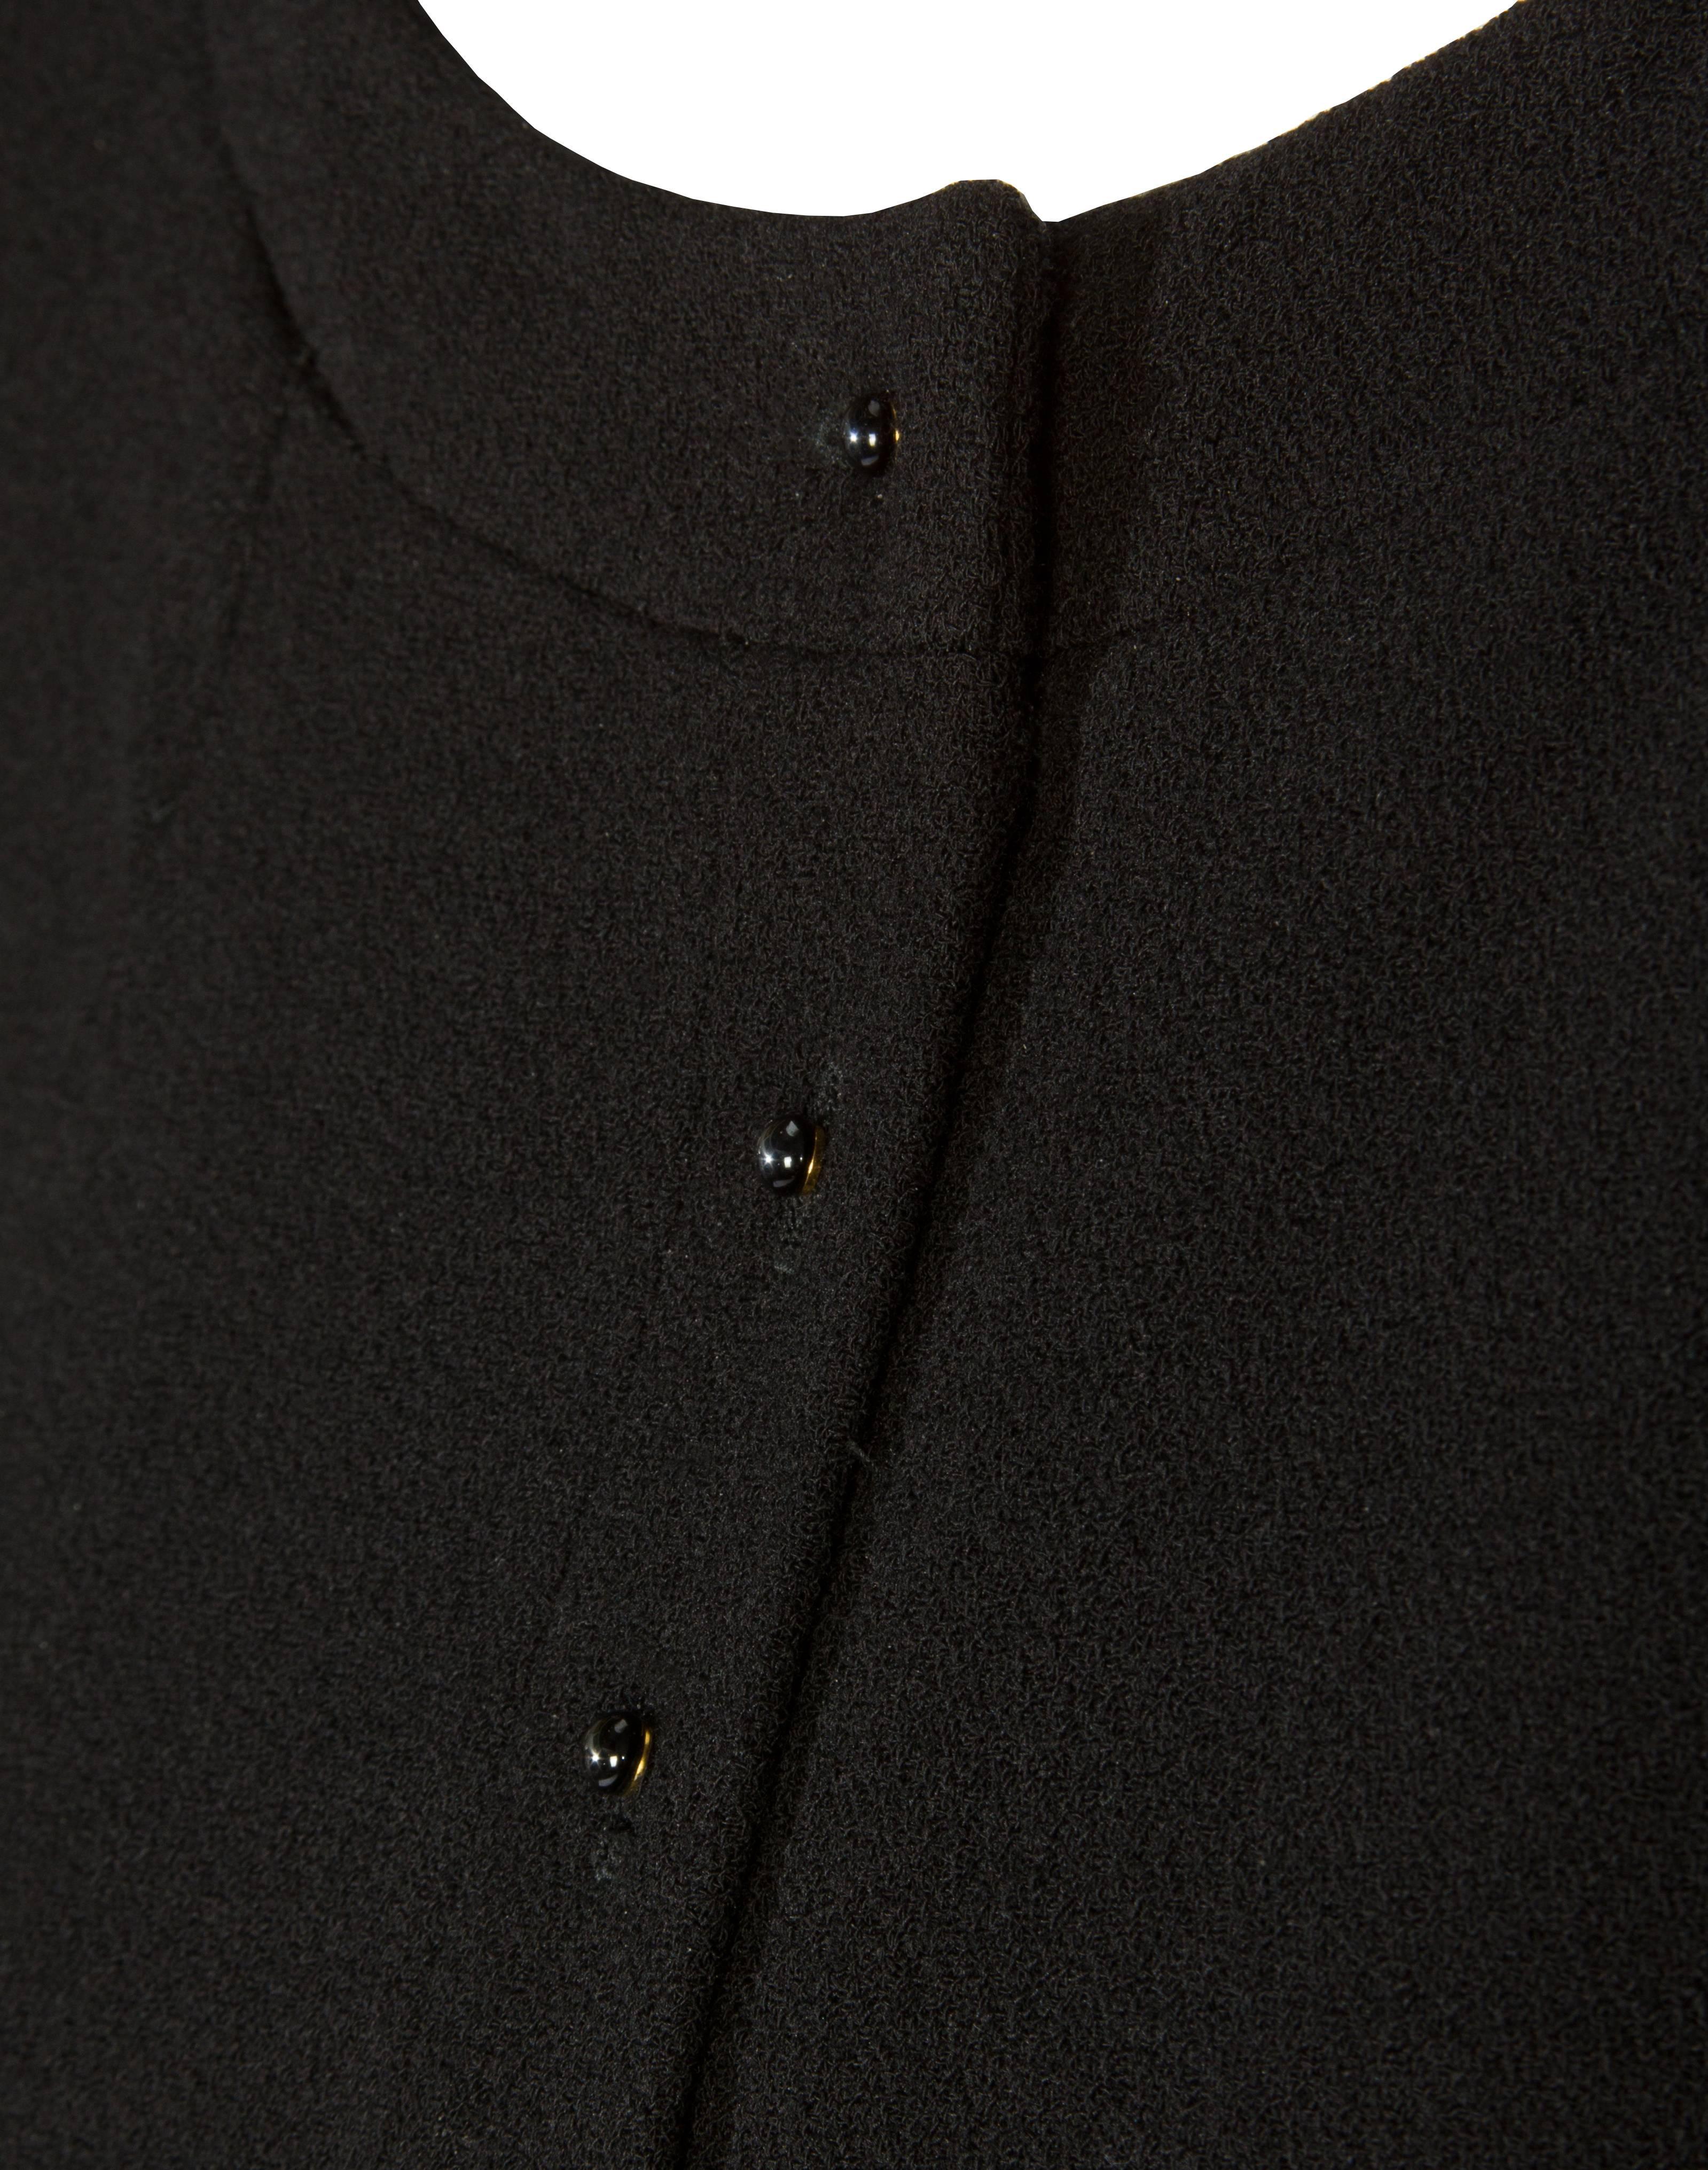 CHANEL Jacket in Black Wool Crepe 2